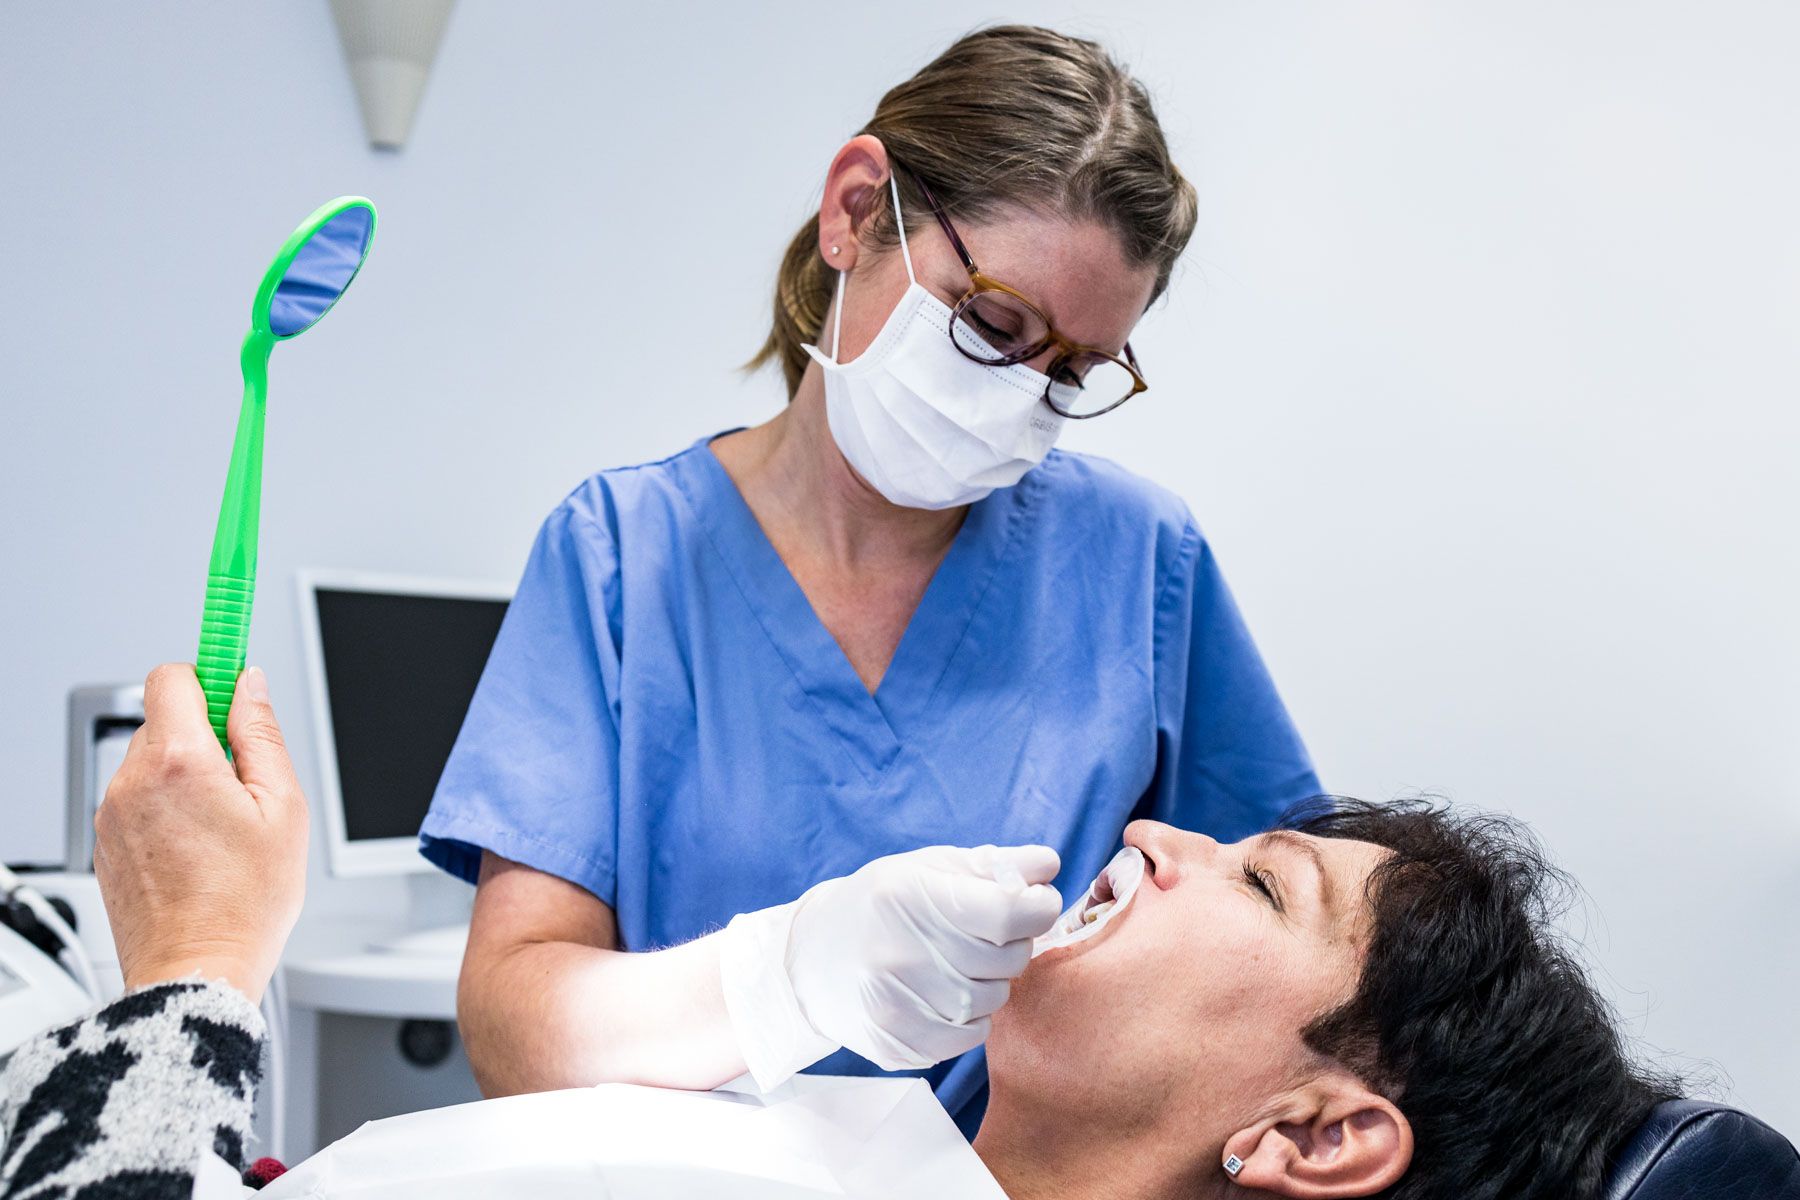 Patientin betrachtet den Stand der Zahnpflege im Spiegel